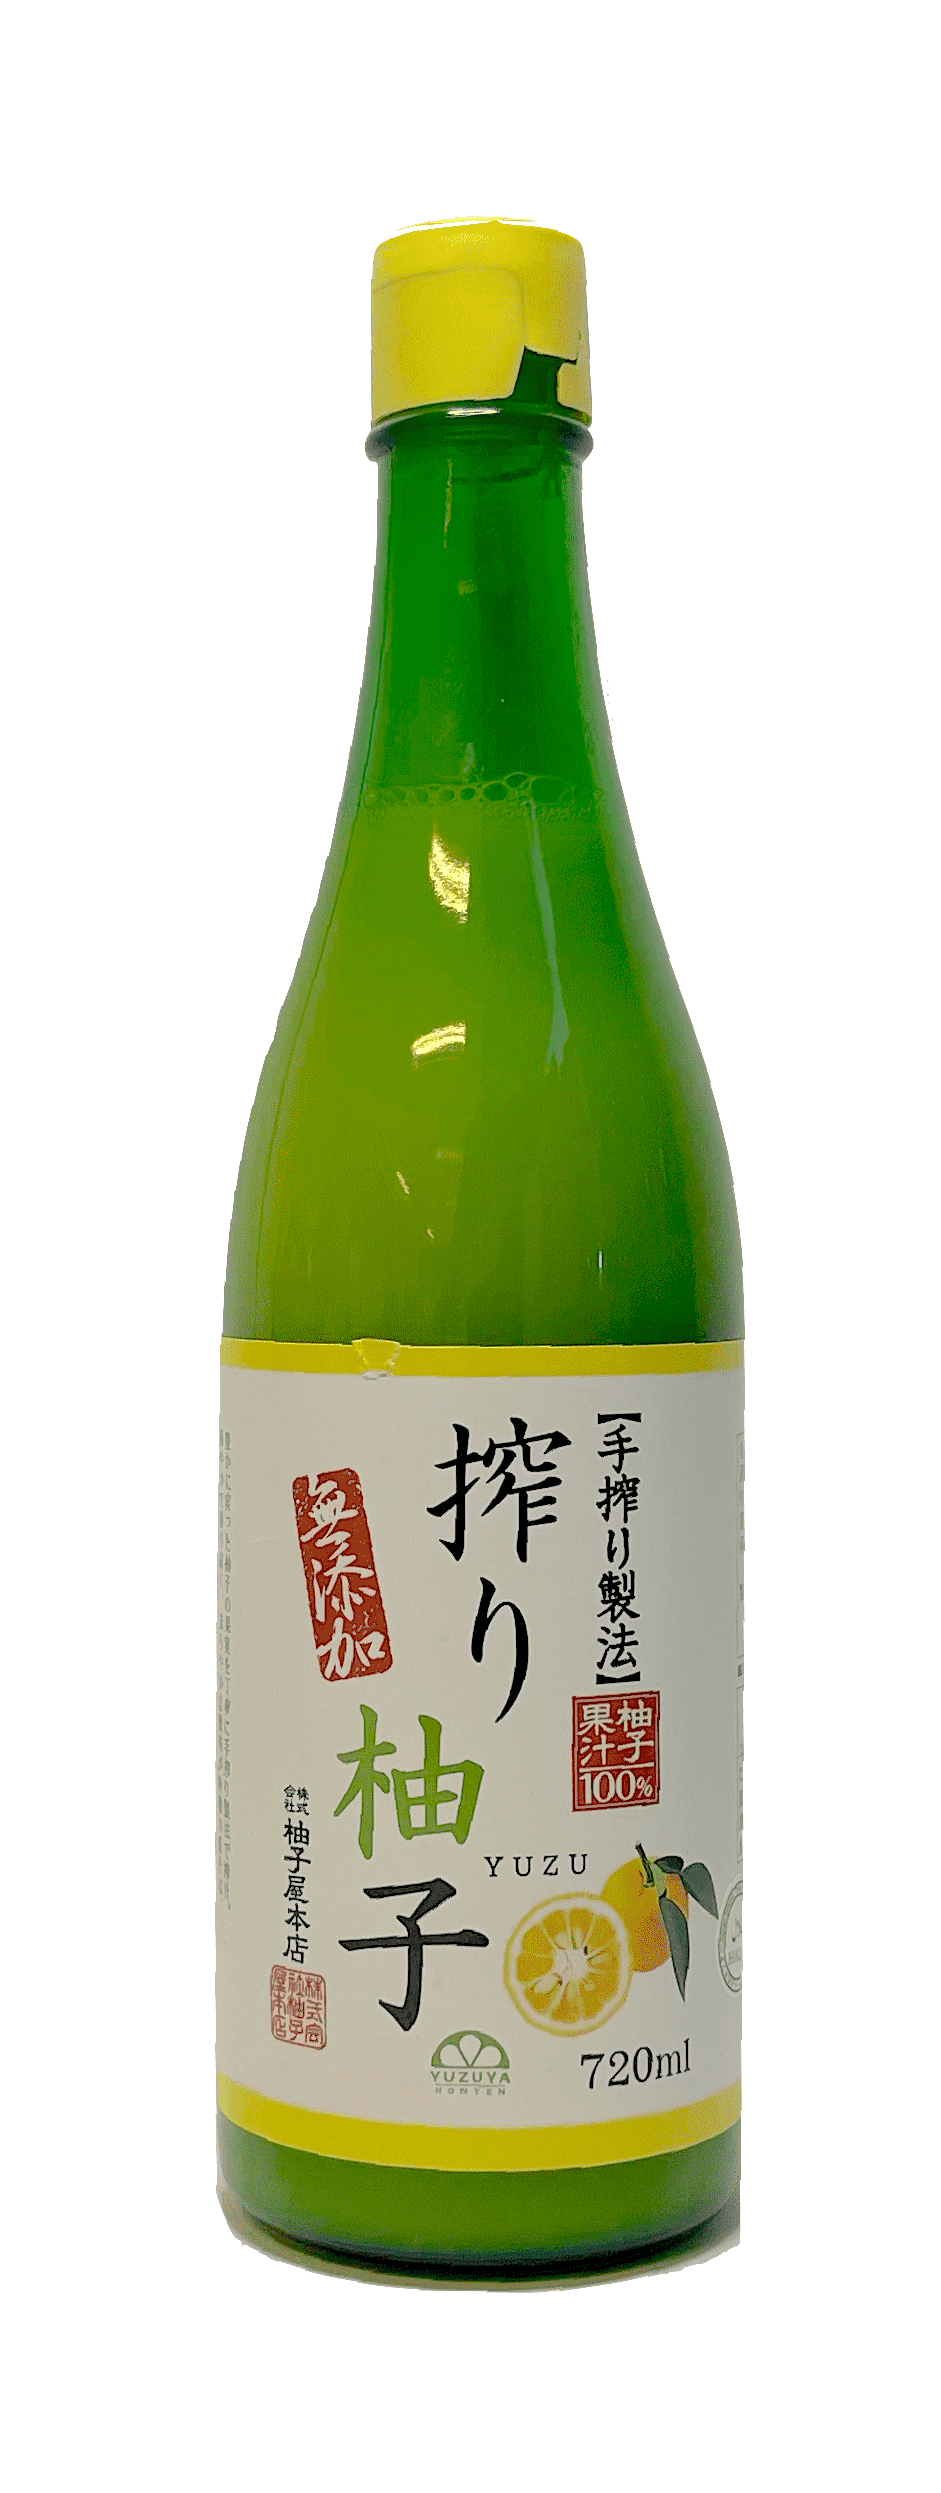 柚子汁 100% 720ml Yuzuya Br. 日本